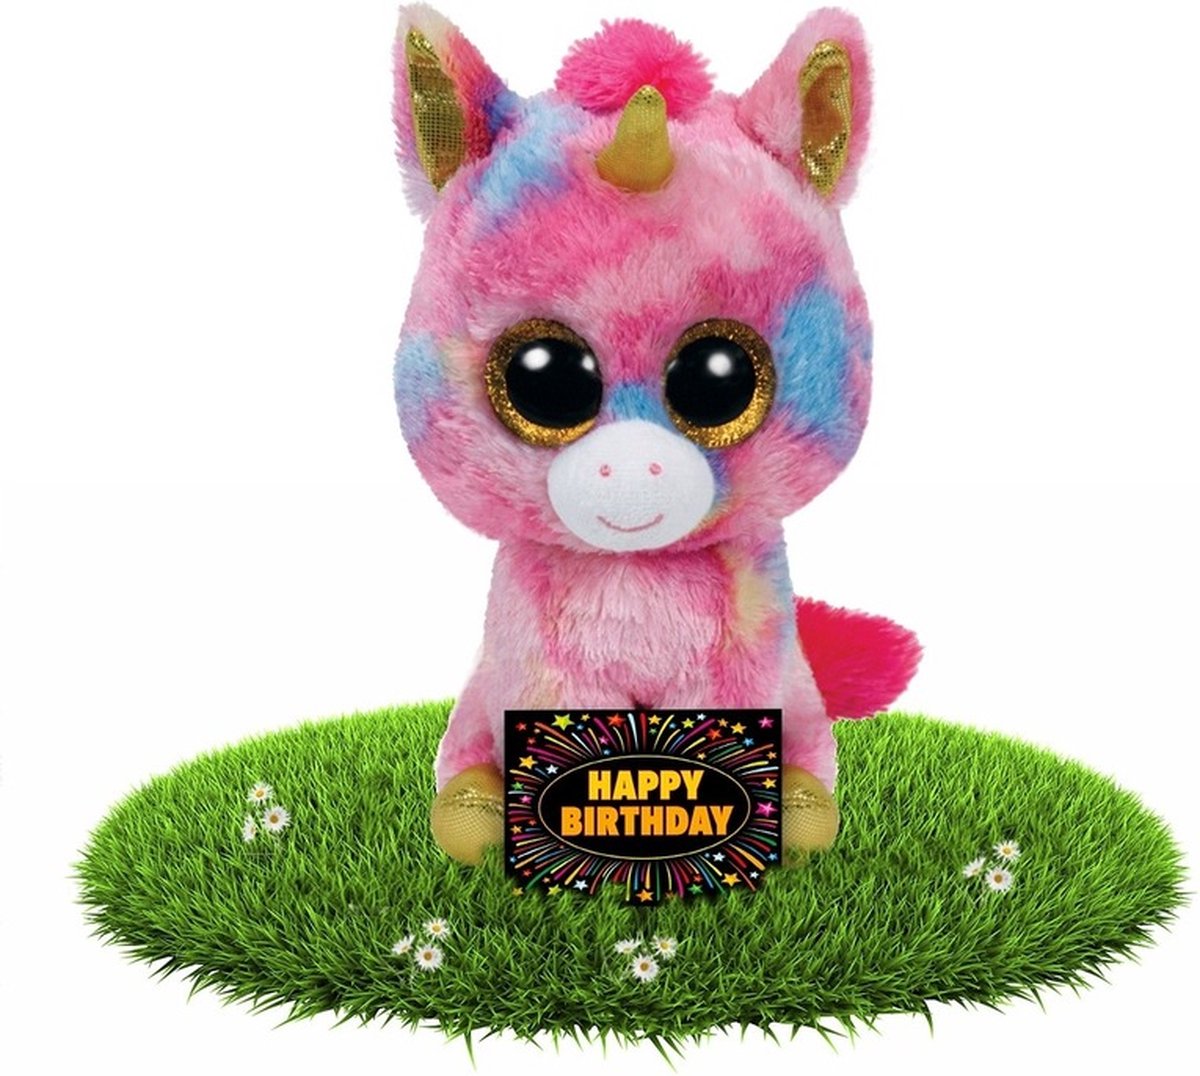 Macadam alledaags Aanzienlijk Verjaardagscadeau eenhoorn Ty Beanie knuffel 24 cm + gratis  verjaardagskaart | bol